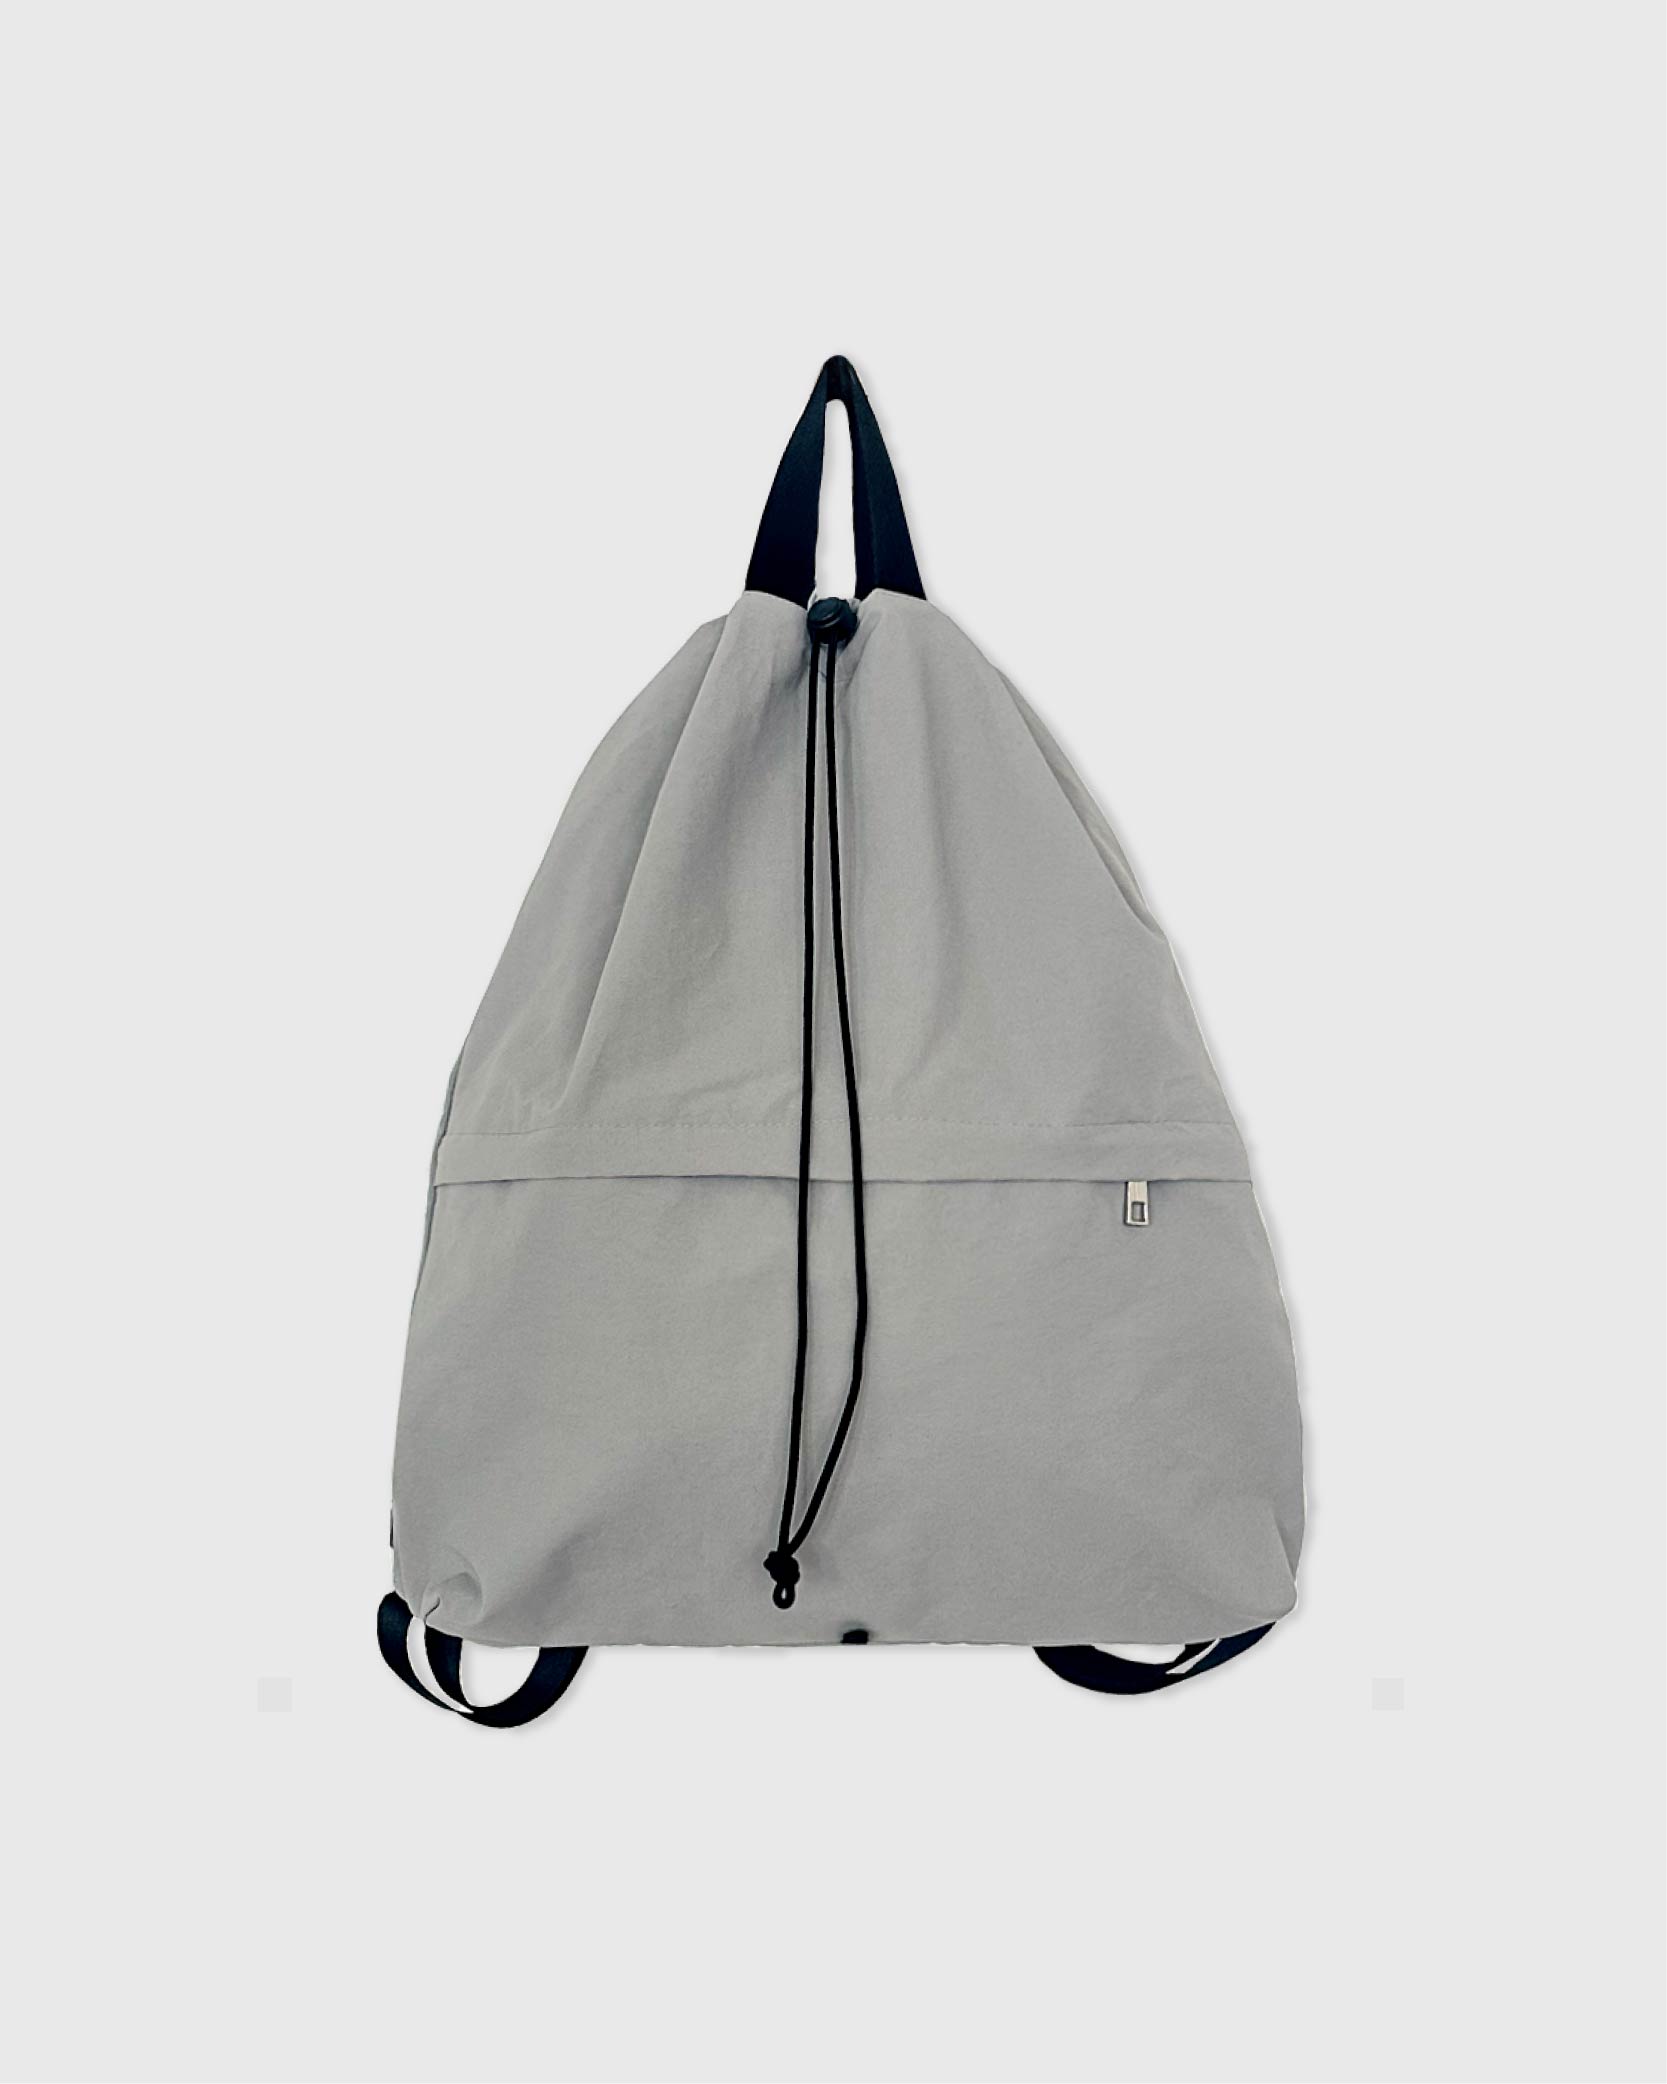 언폴드,unfold,에코백,파우치,천가방,친환경가방,String backpack (gray)